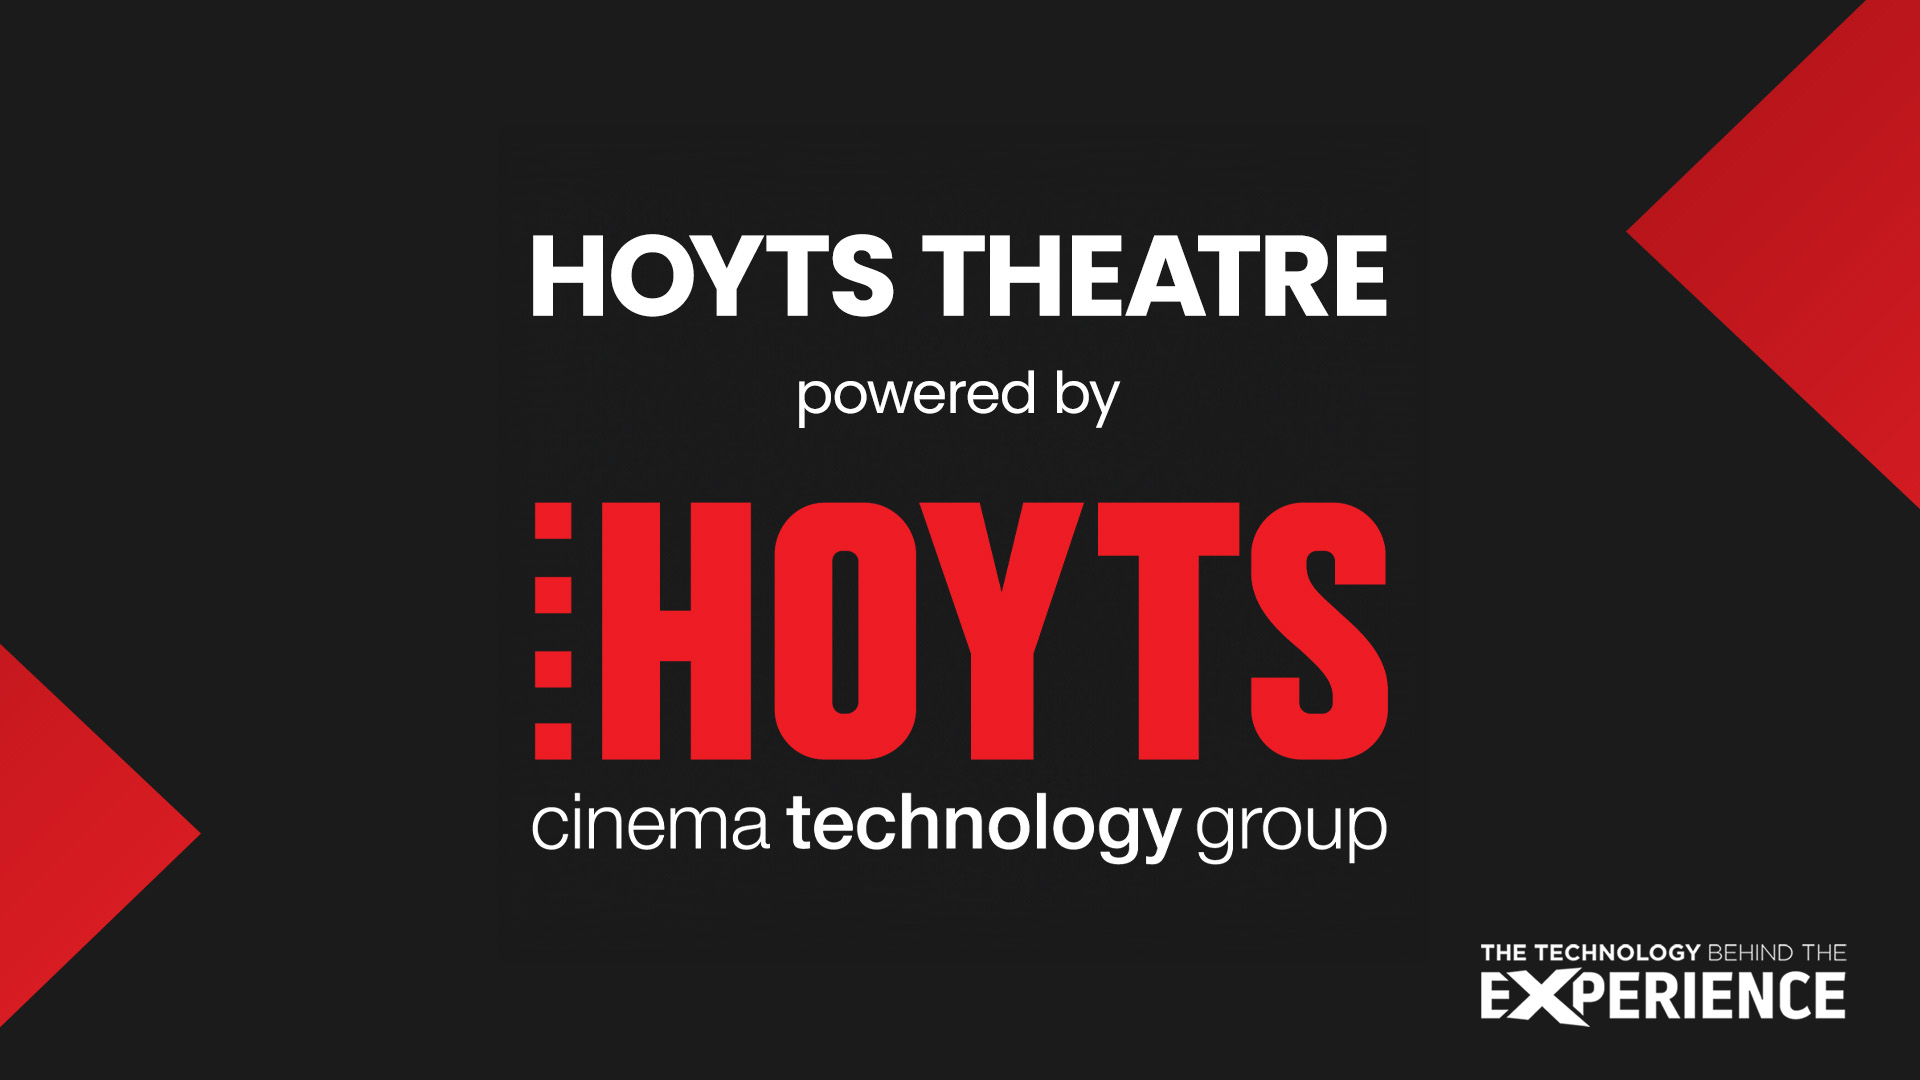 hoyts theatre